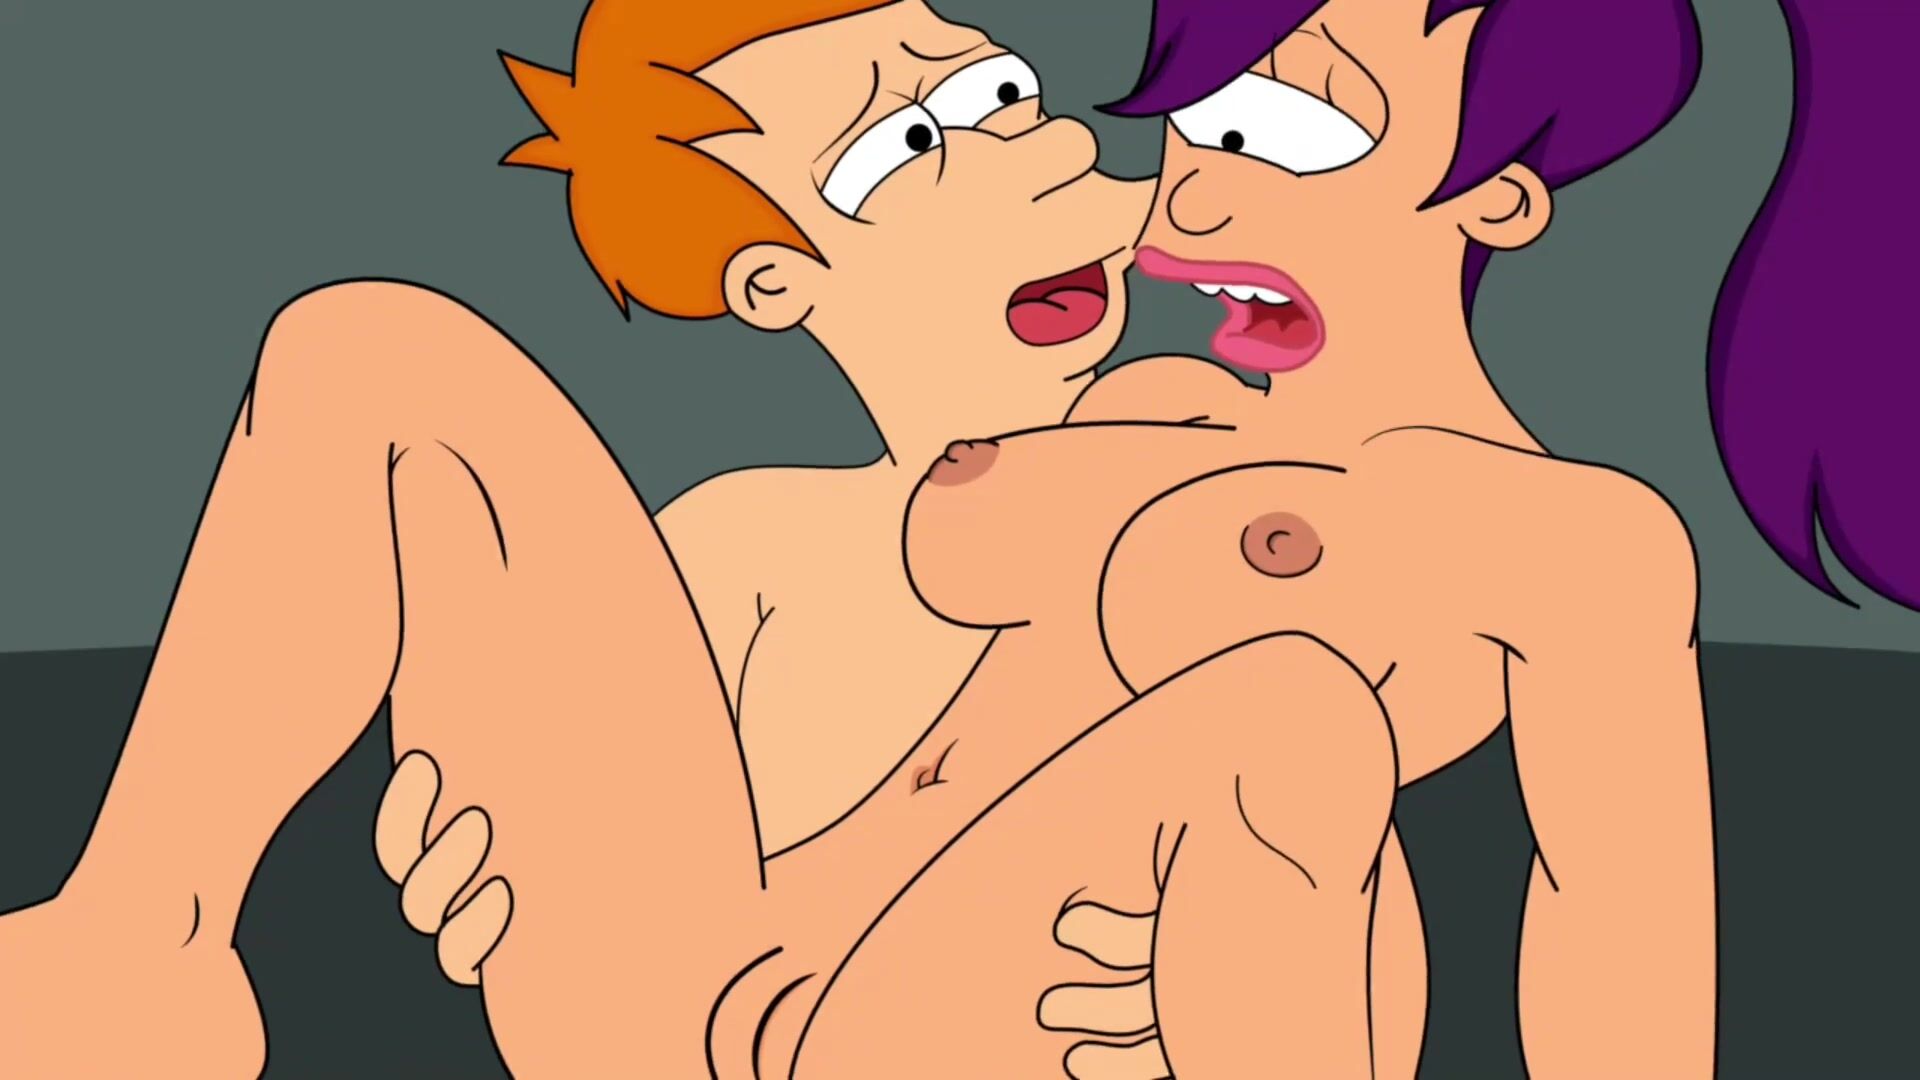 Futurama Leela Ass Porn Animated - FUTURAMA| LEELA HAS ANAL SEX WITH PHILIP! - FAPCAT